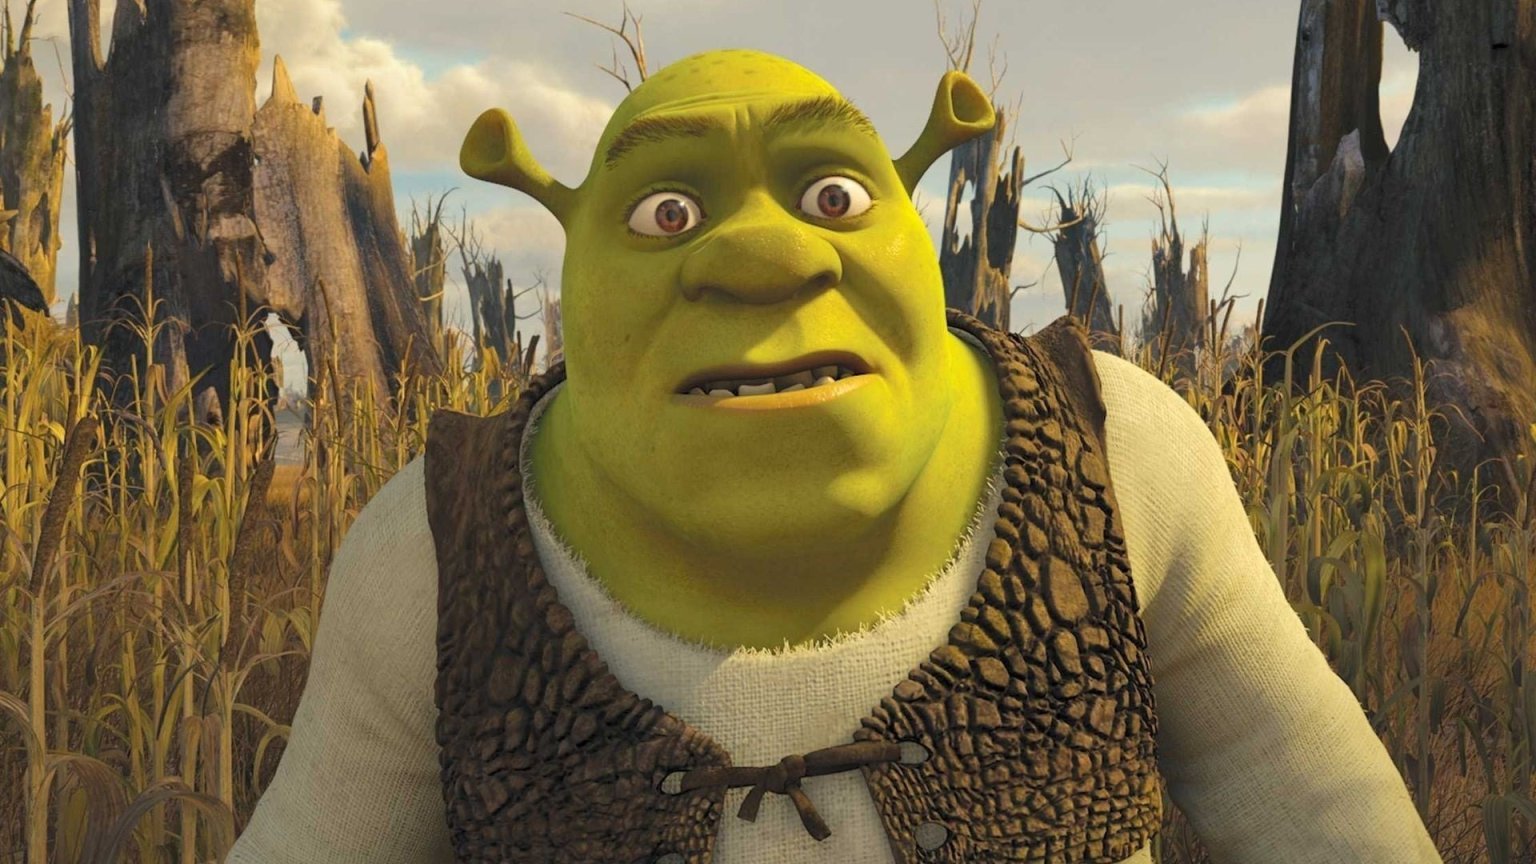 Mike Myers zou dolgraag nog meer 'Shrek'-films maken: 'Ik speel graag Shrek'